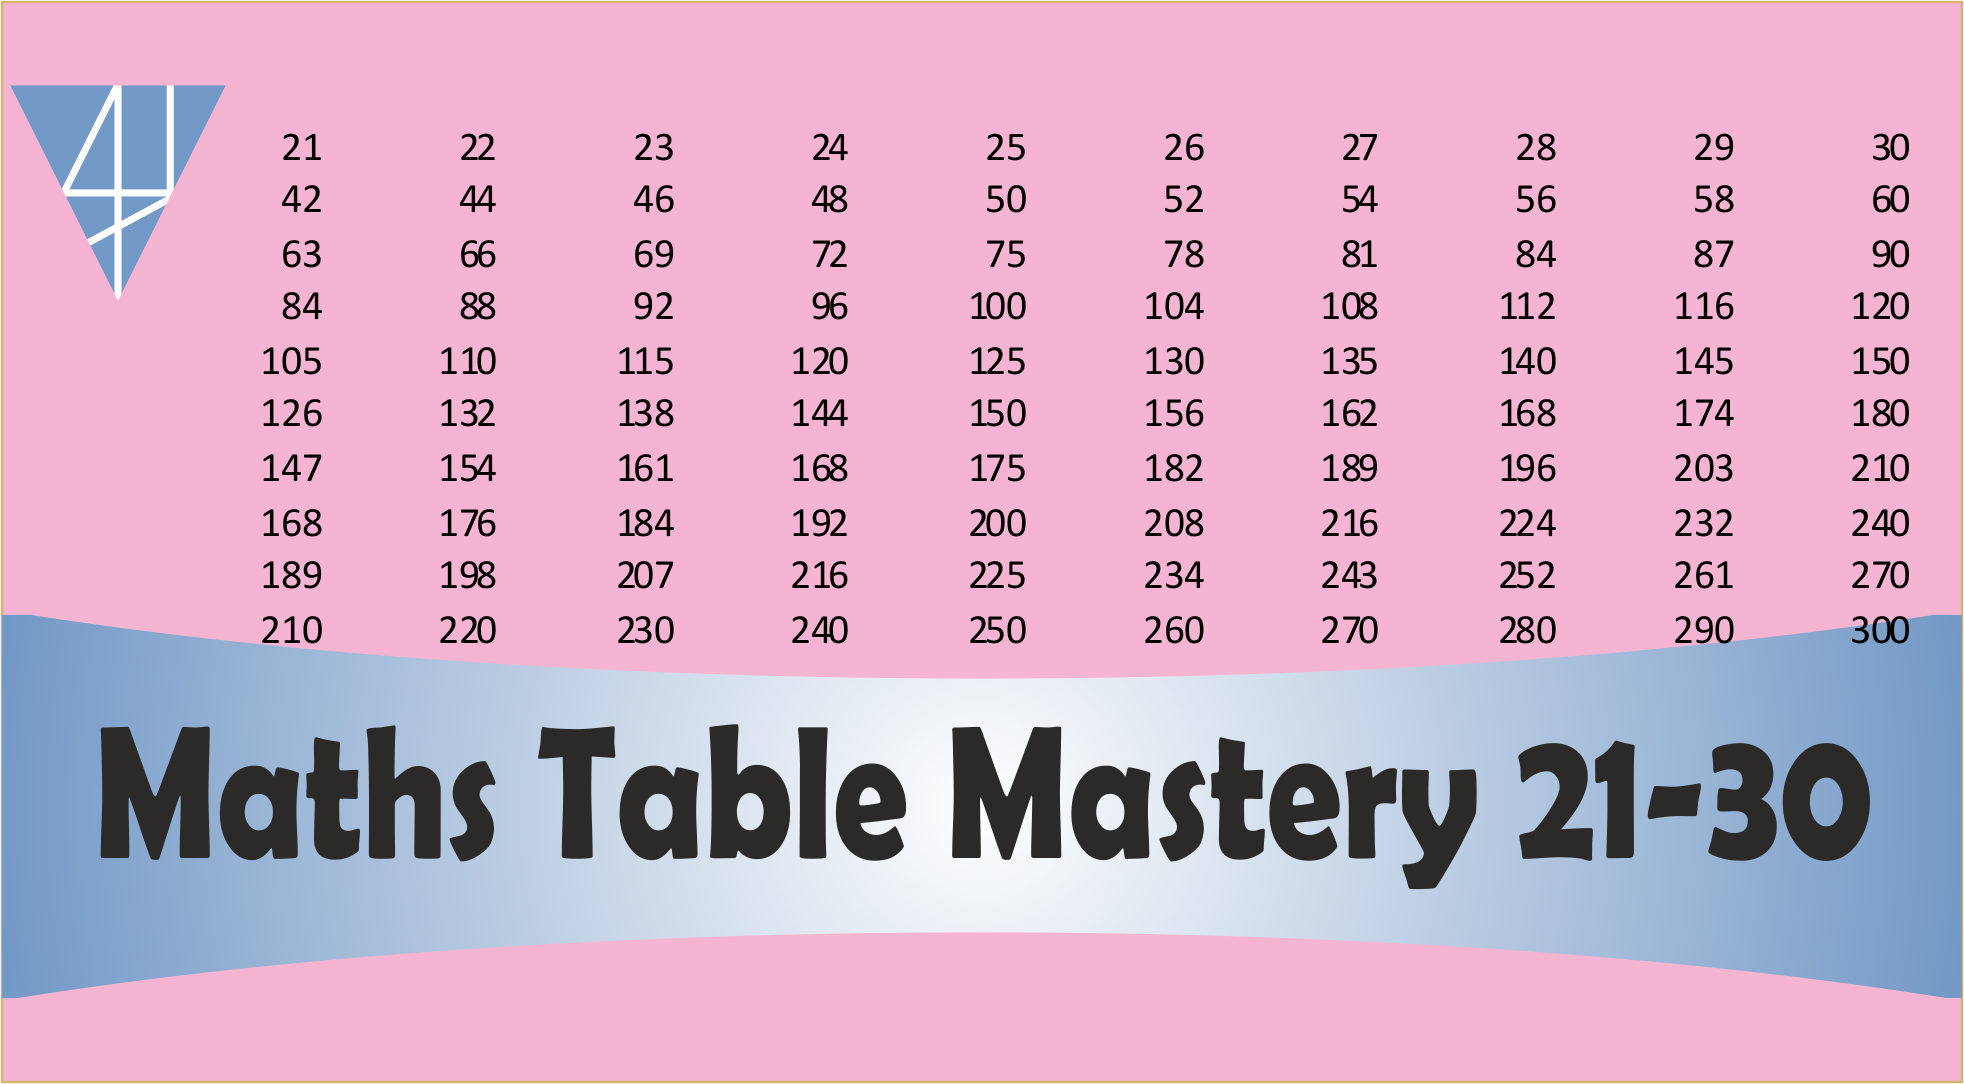 BMS4-Maths Table Mastery Course – (21-30)